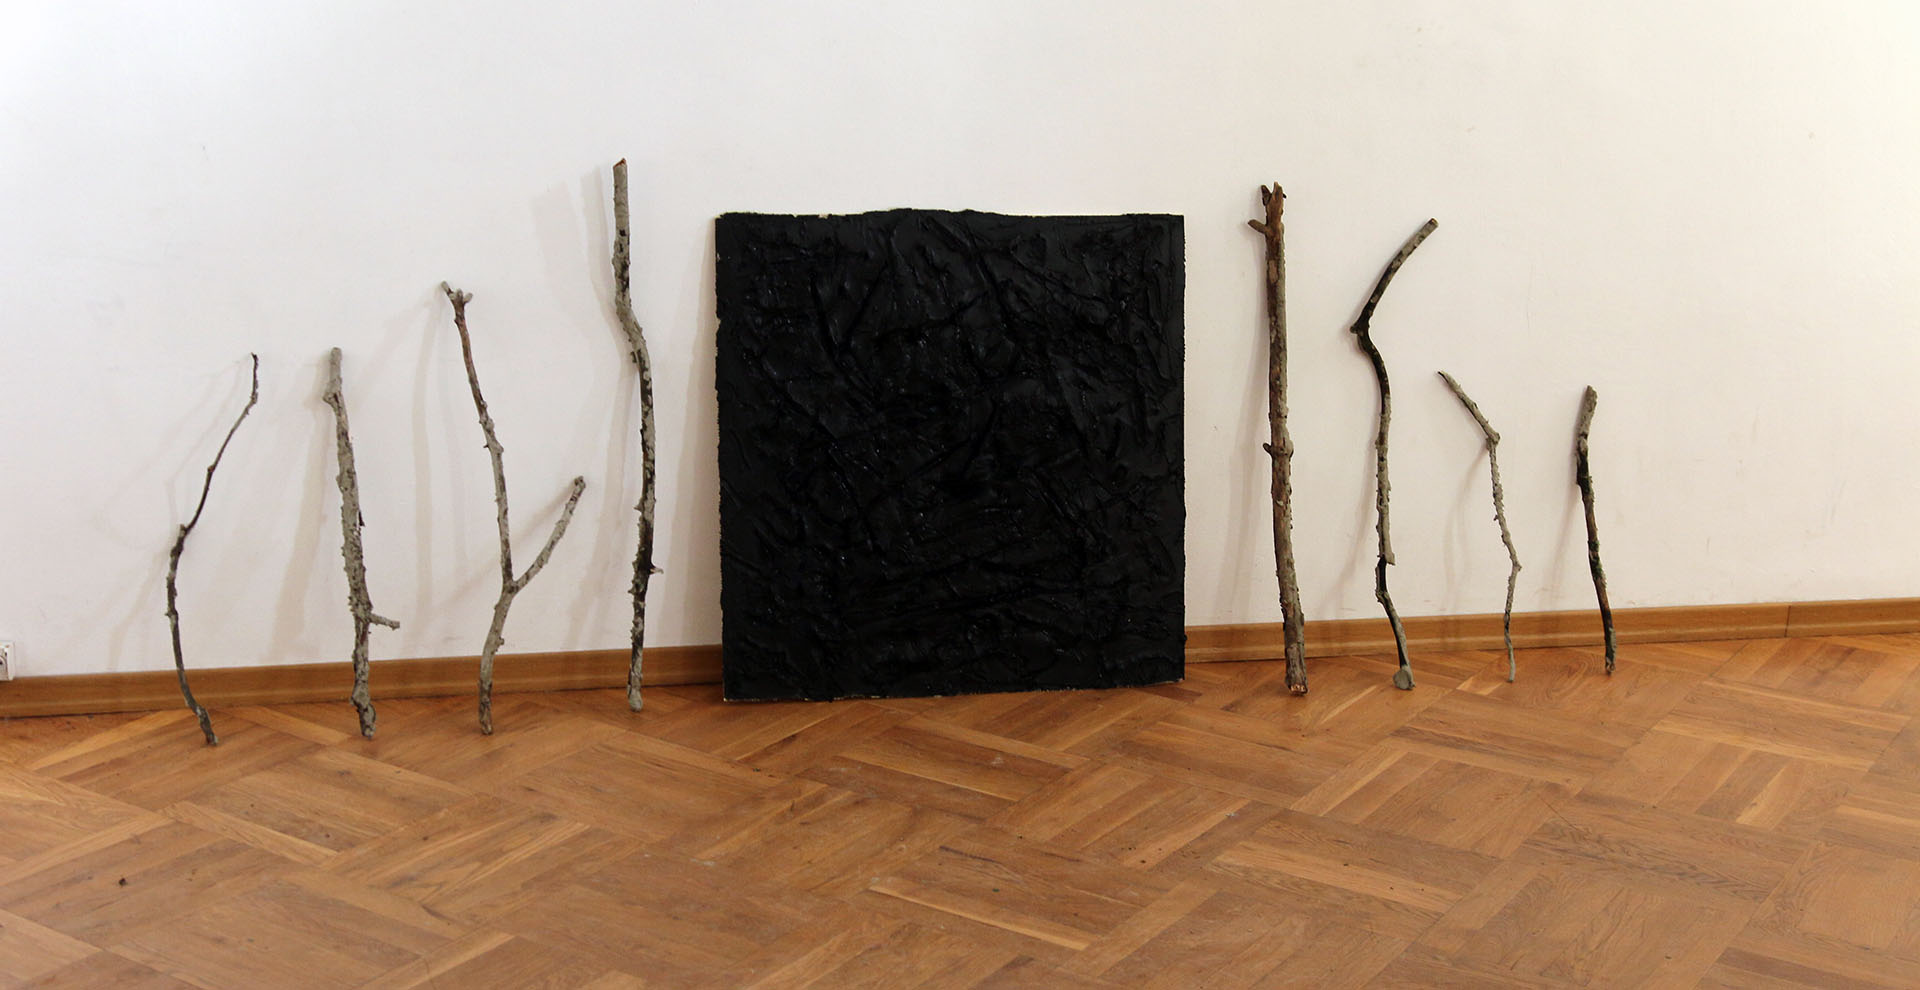 Zdjęcie przedstawia oparte o ścianę stare gałęzie, długości około 1 metra oraz kwadratową płytę o podobnych wymiarach z nałożoną czarną, smolistą substancją